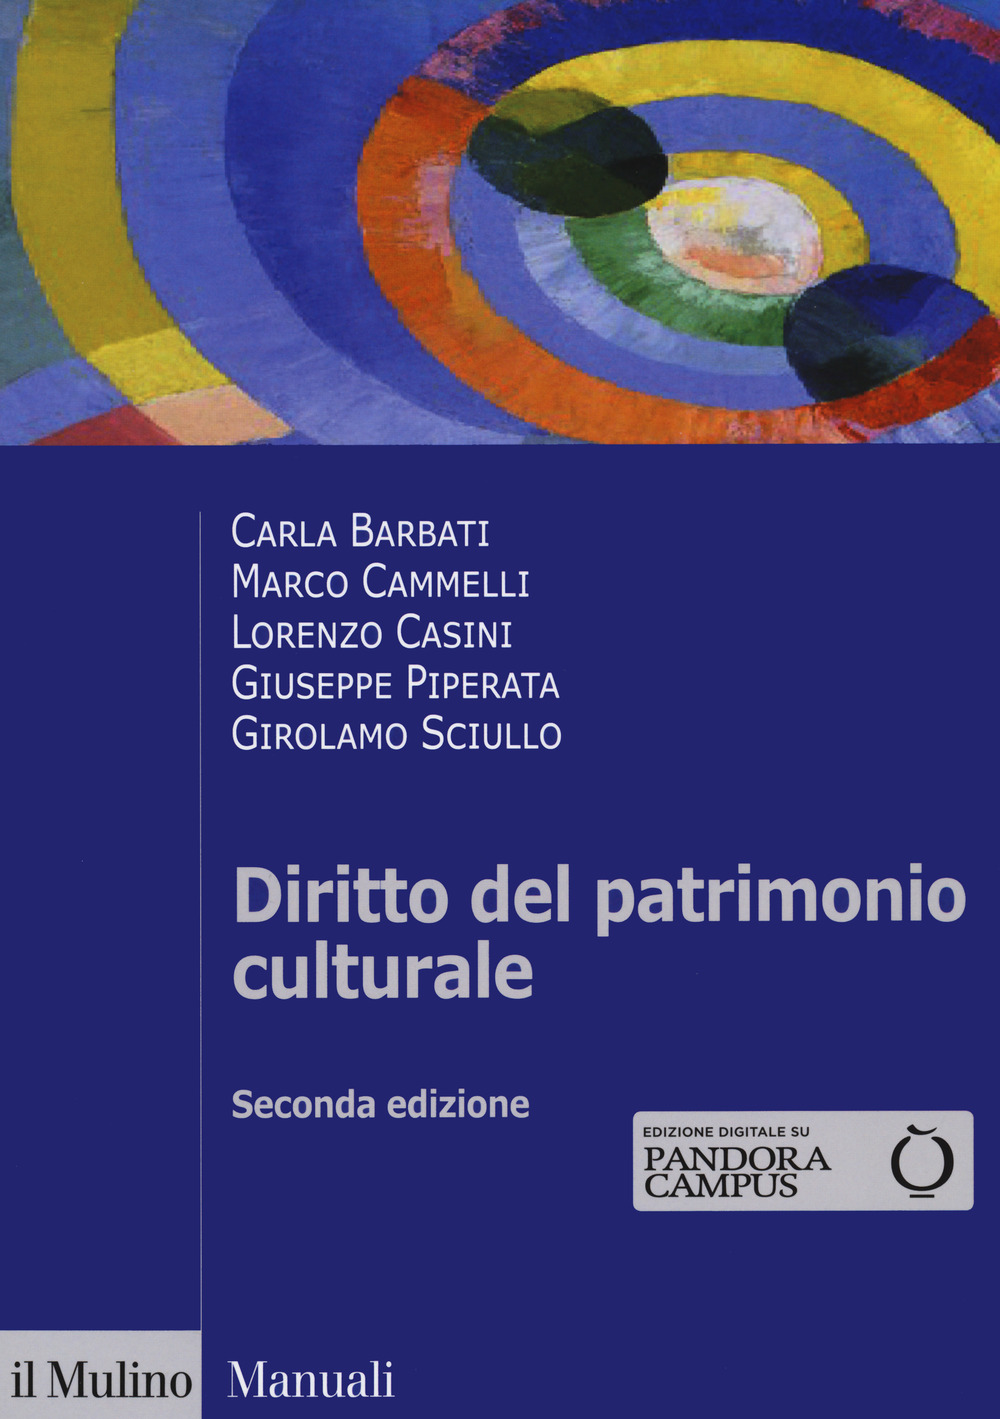 Libri Carla Barbati / Marco Cammelli / Lorenzo Casini - Diritto Del Patrimonio Culturale NUOVO SIGILLATO, EDIZIONE DEL 24/09/2020 SUBITO DISPONIBILE